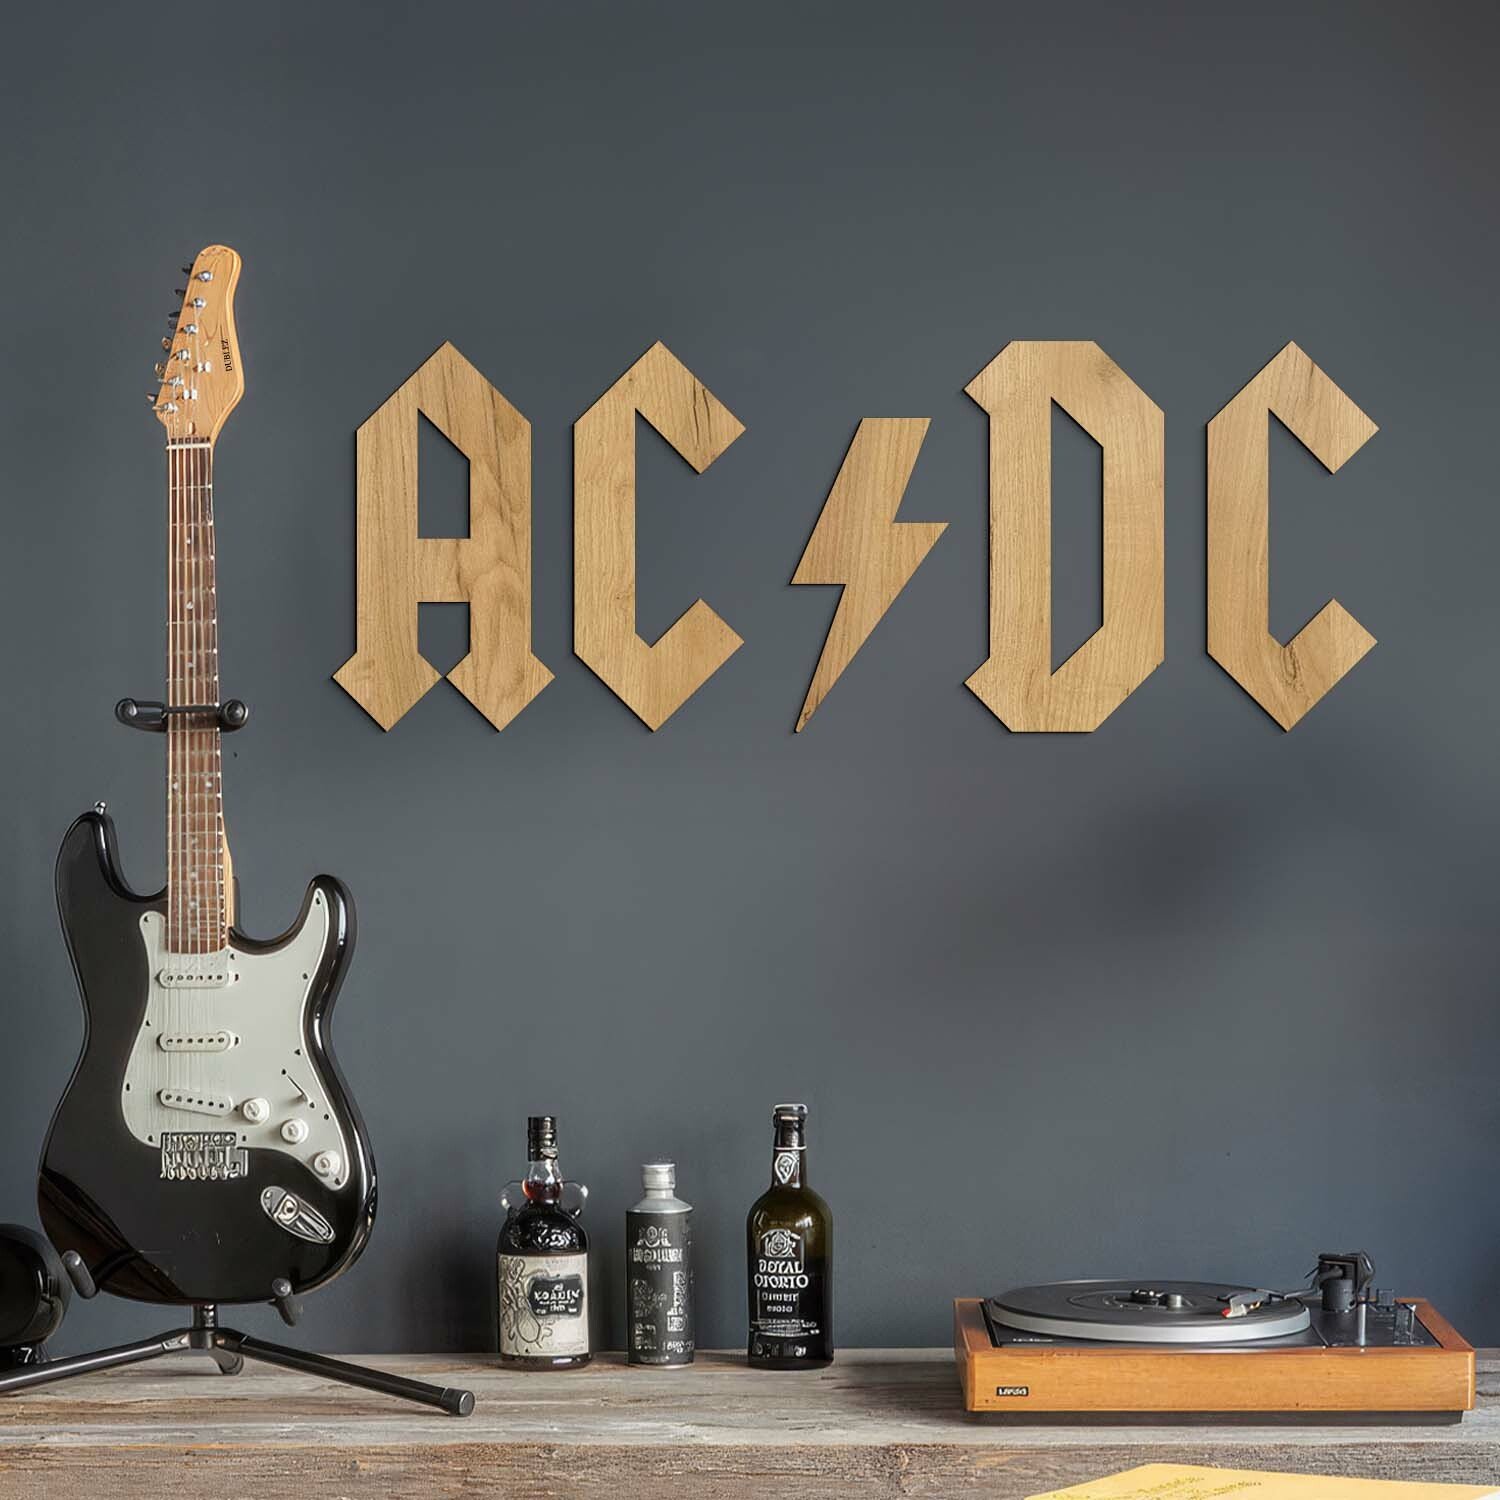 Dřevěné logo - Nápis na zeď - AC/DC